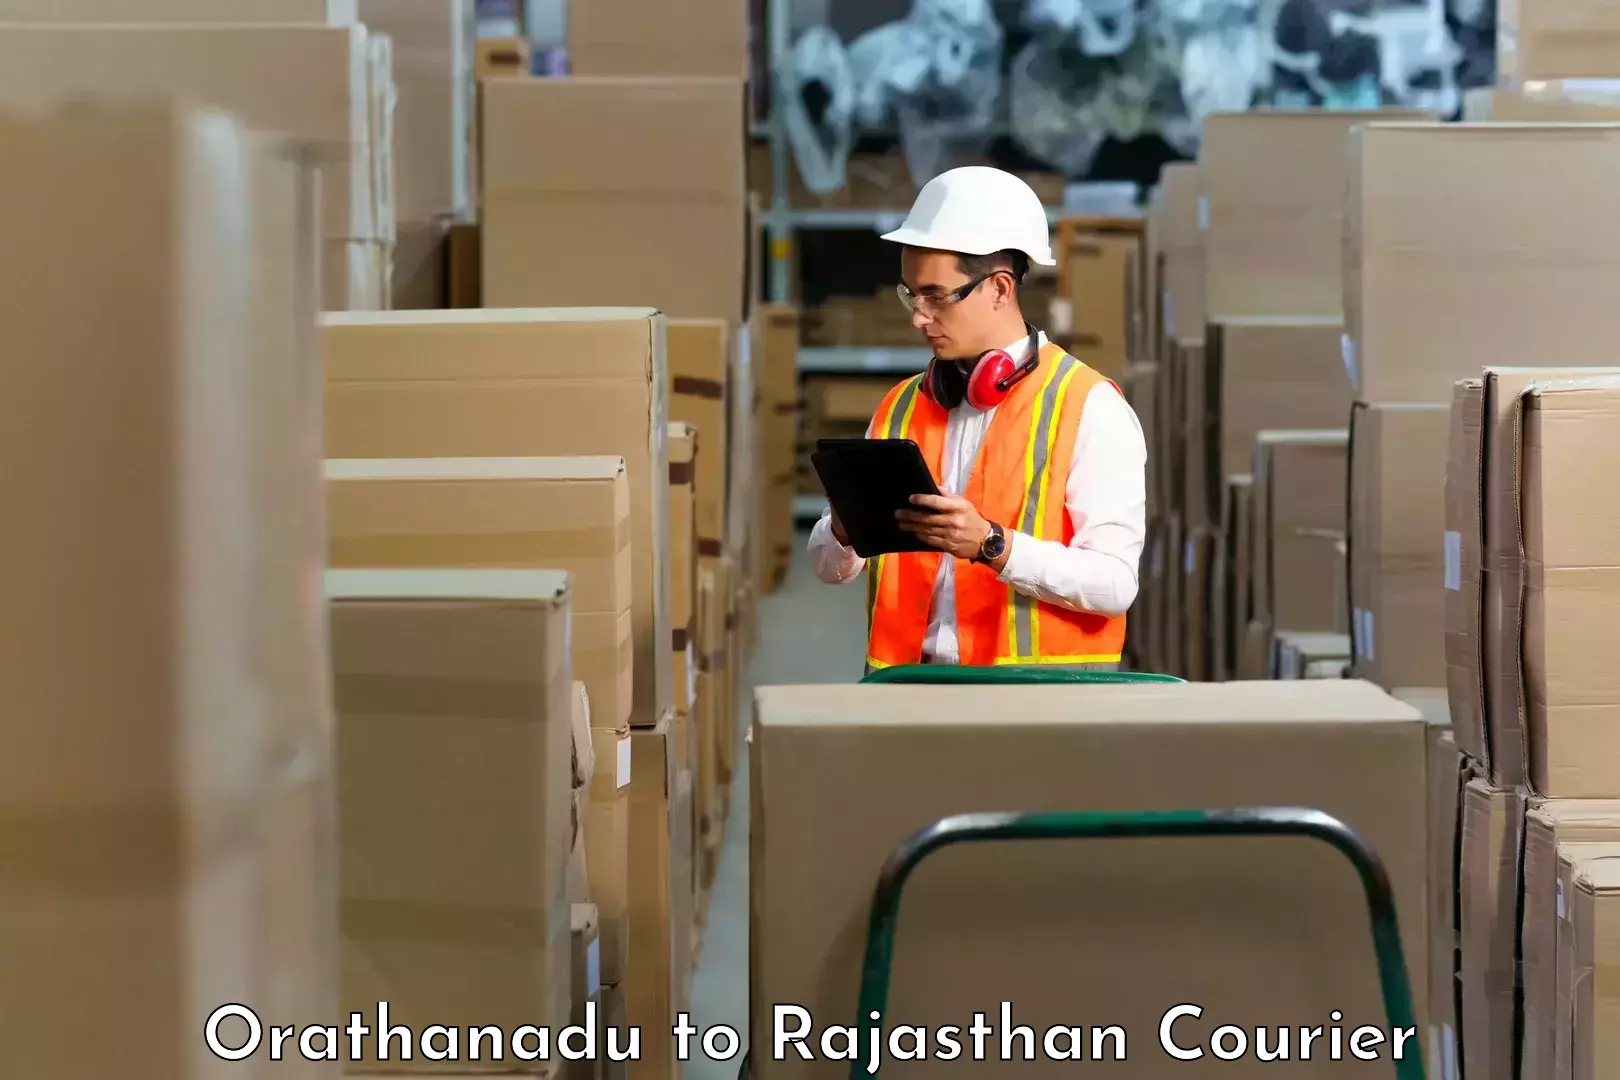 Smart logistics solutions Orathanadu to Chittorgarh